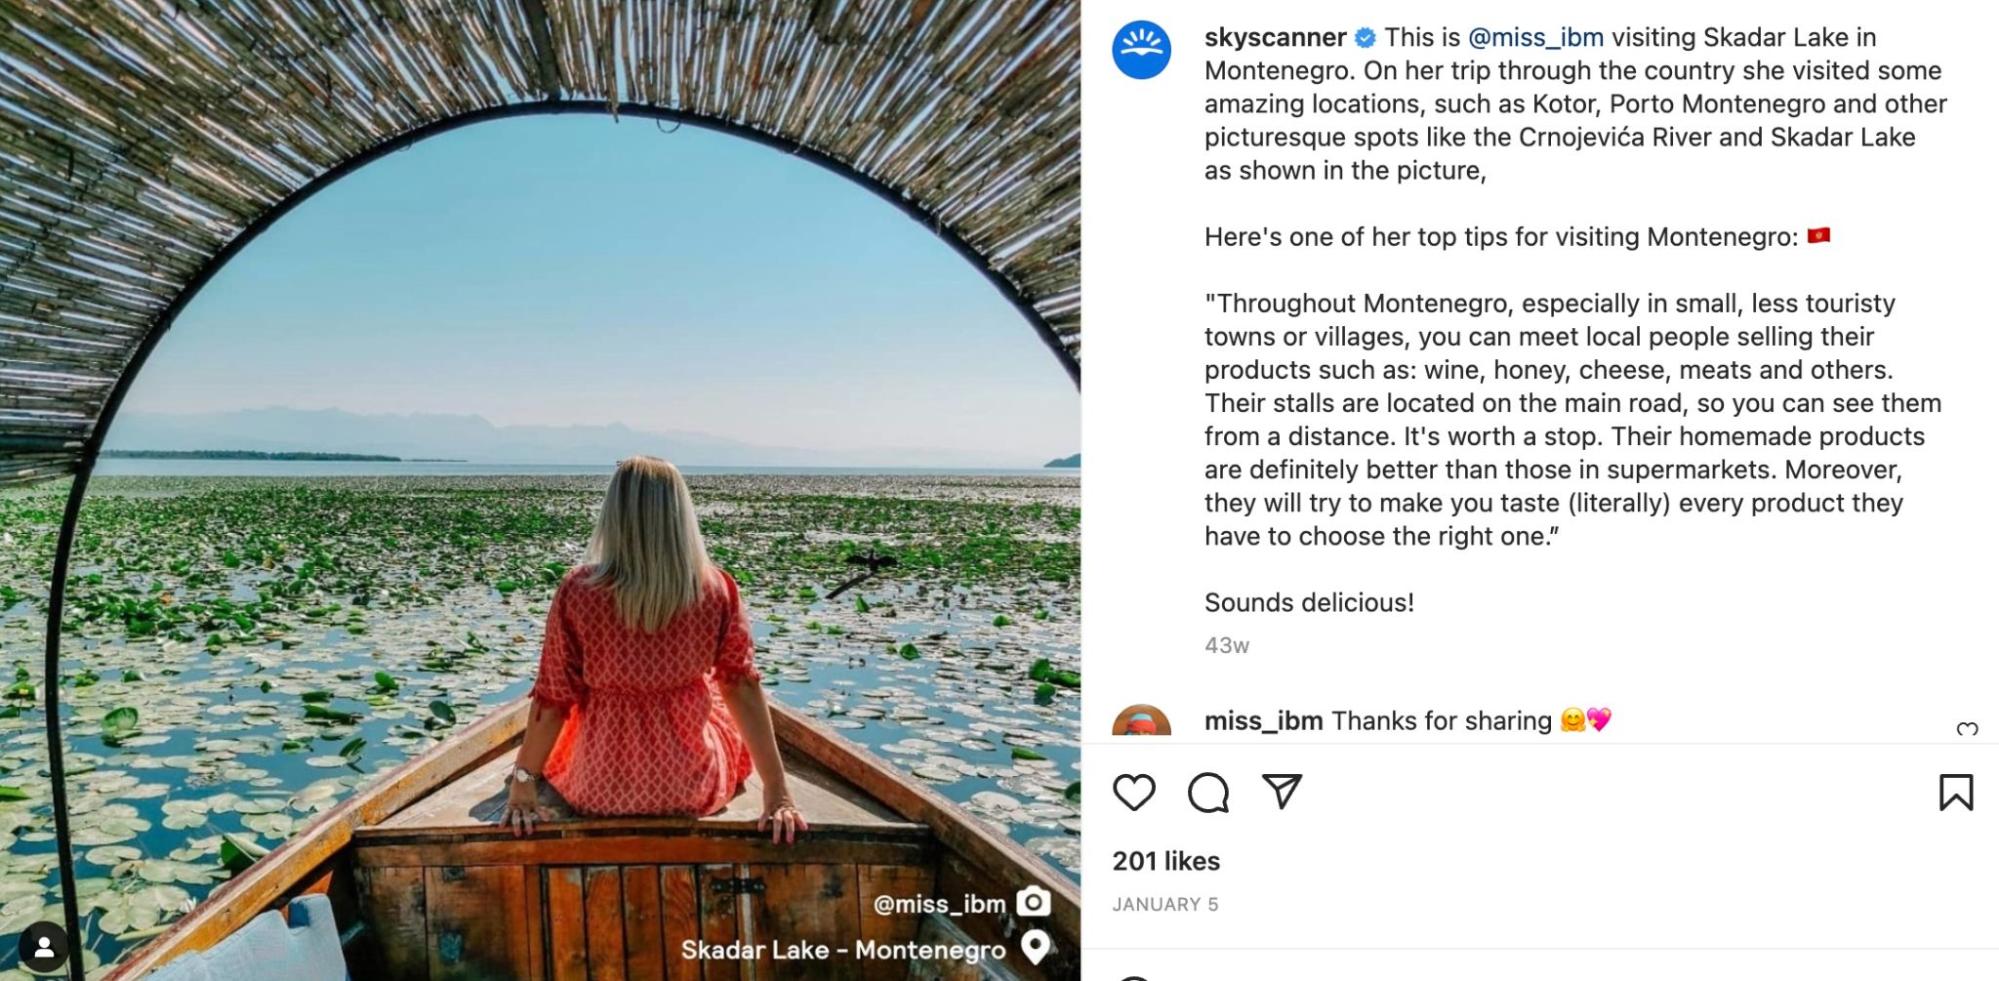 captură de ecran a postării pe Instagram Skyscanner a unei femei care stă pe o barcă în Muntenegru